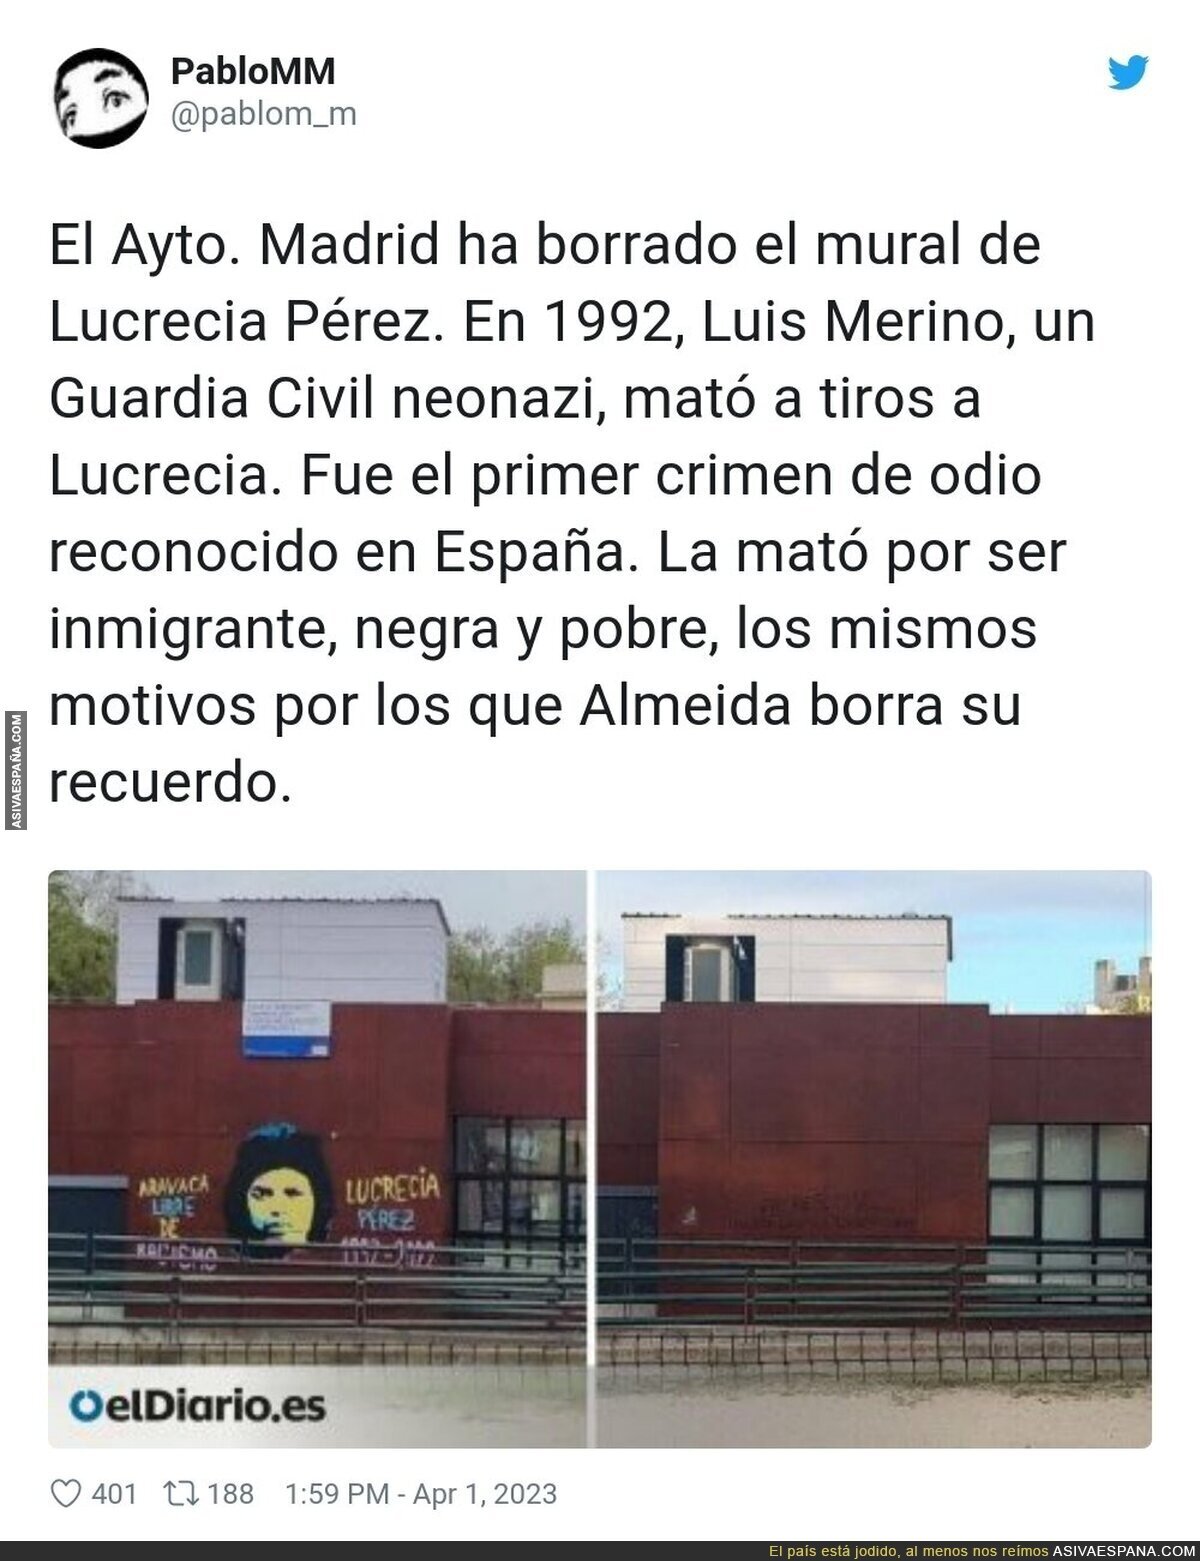 ¿Por qué el ayuntamiento de Madrid trata de borrar la historia?